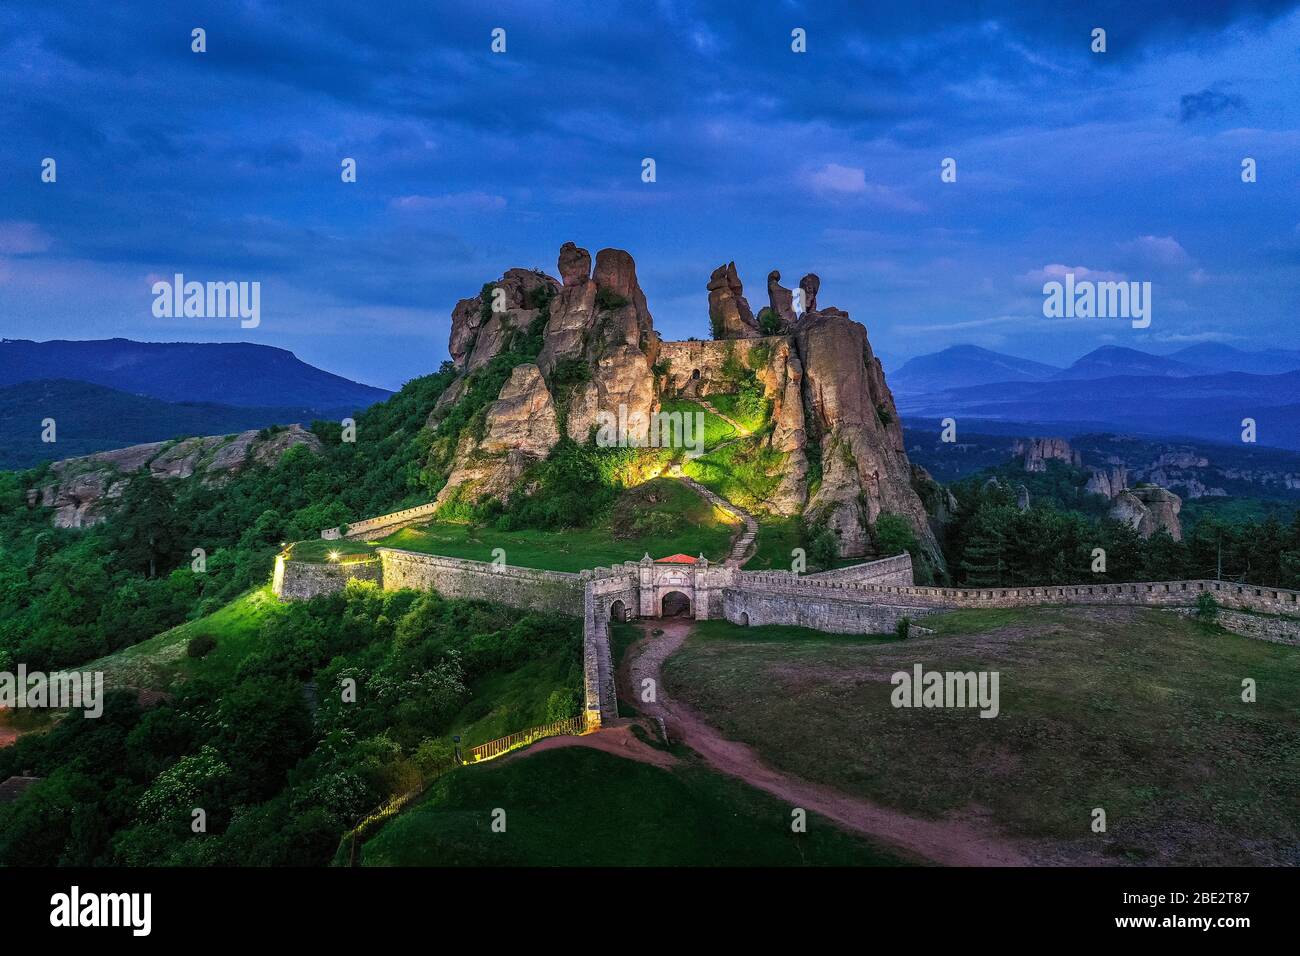 Europa, Bulgaria, Belogradchik, vista aérea de las formaciones rocosas de la fortaleza de Kaleto Rock Foto de stock